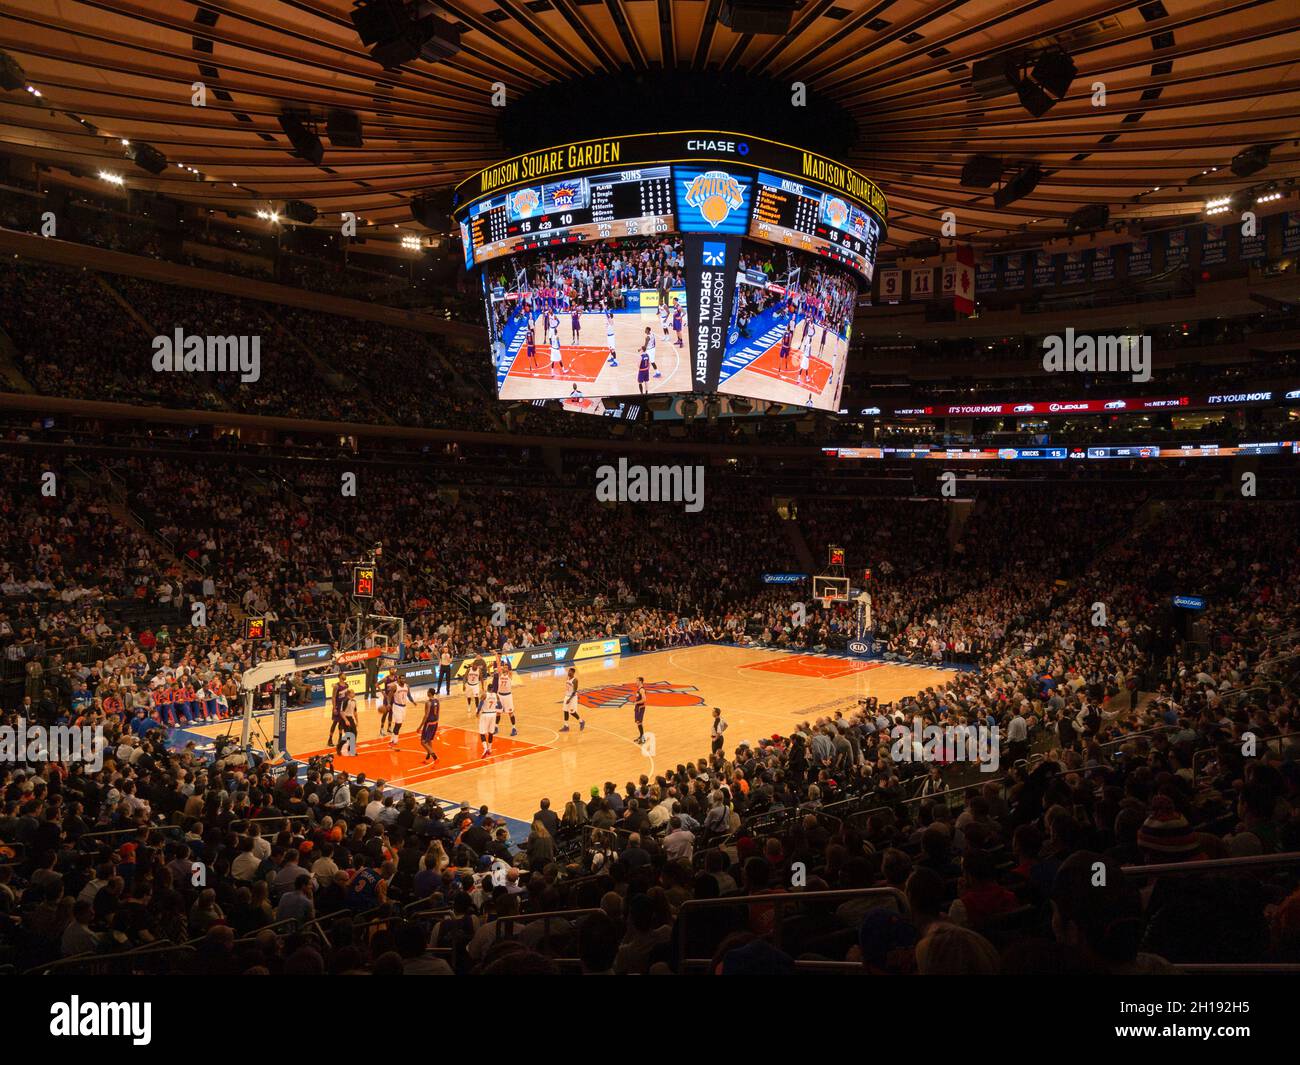 The New York Knicks versus The Phoenix suns lors d'un match NBA au Madison Square Garden. Banque D'Images